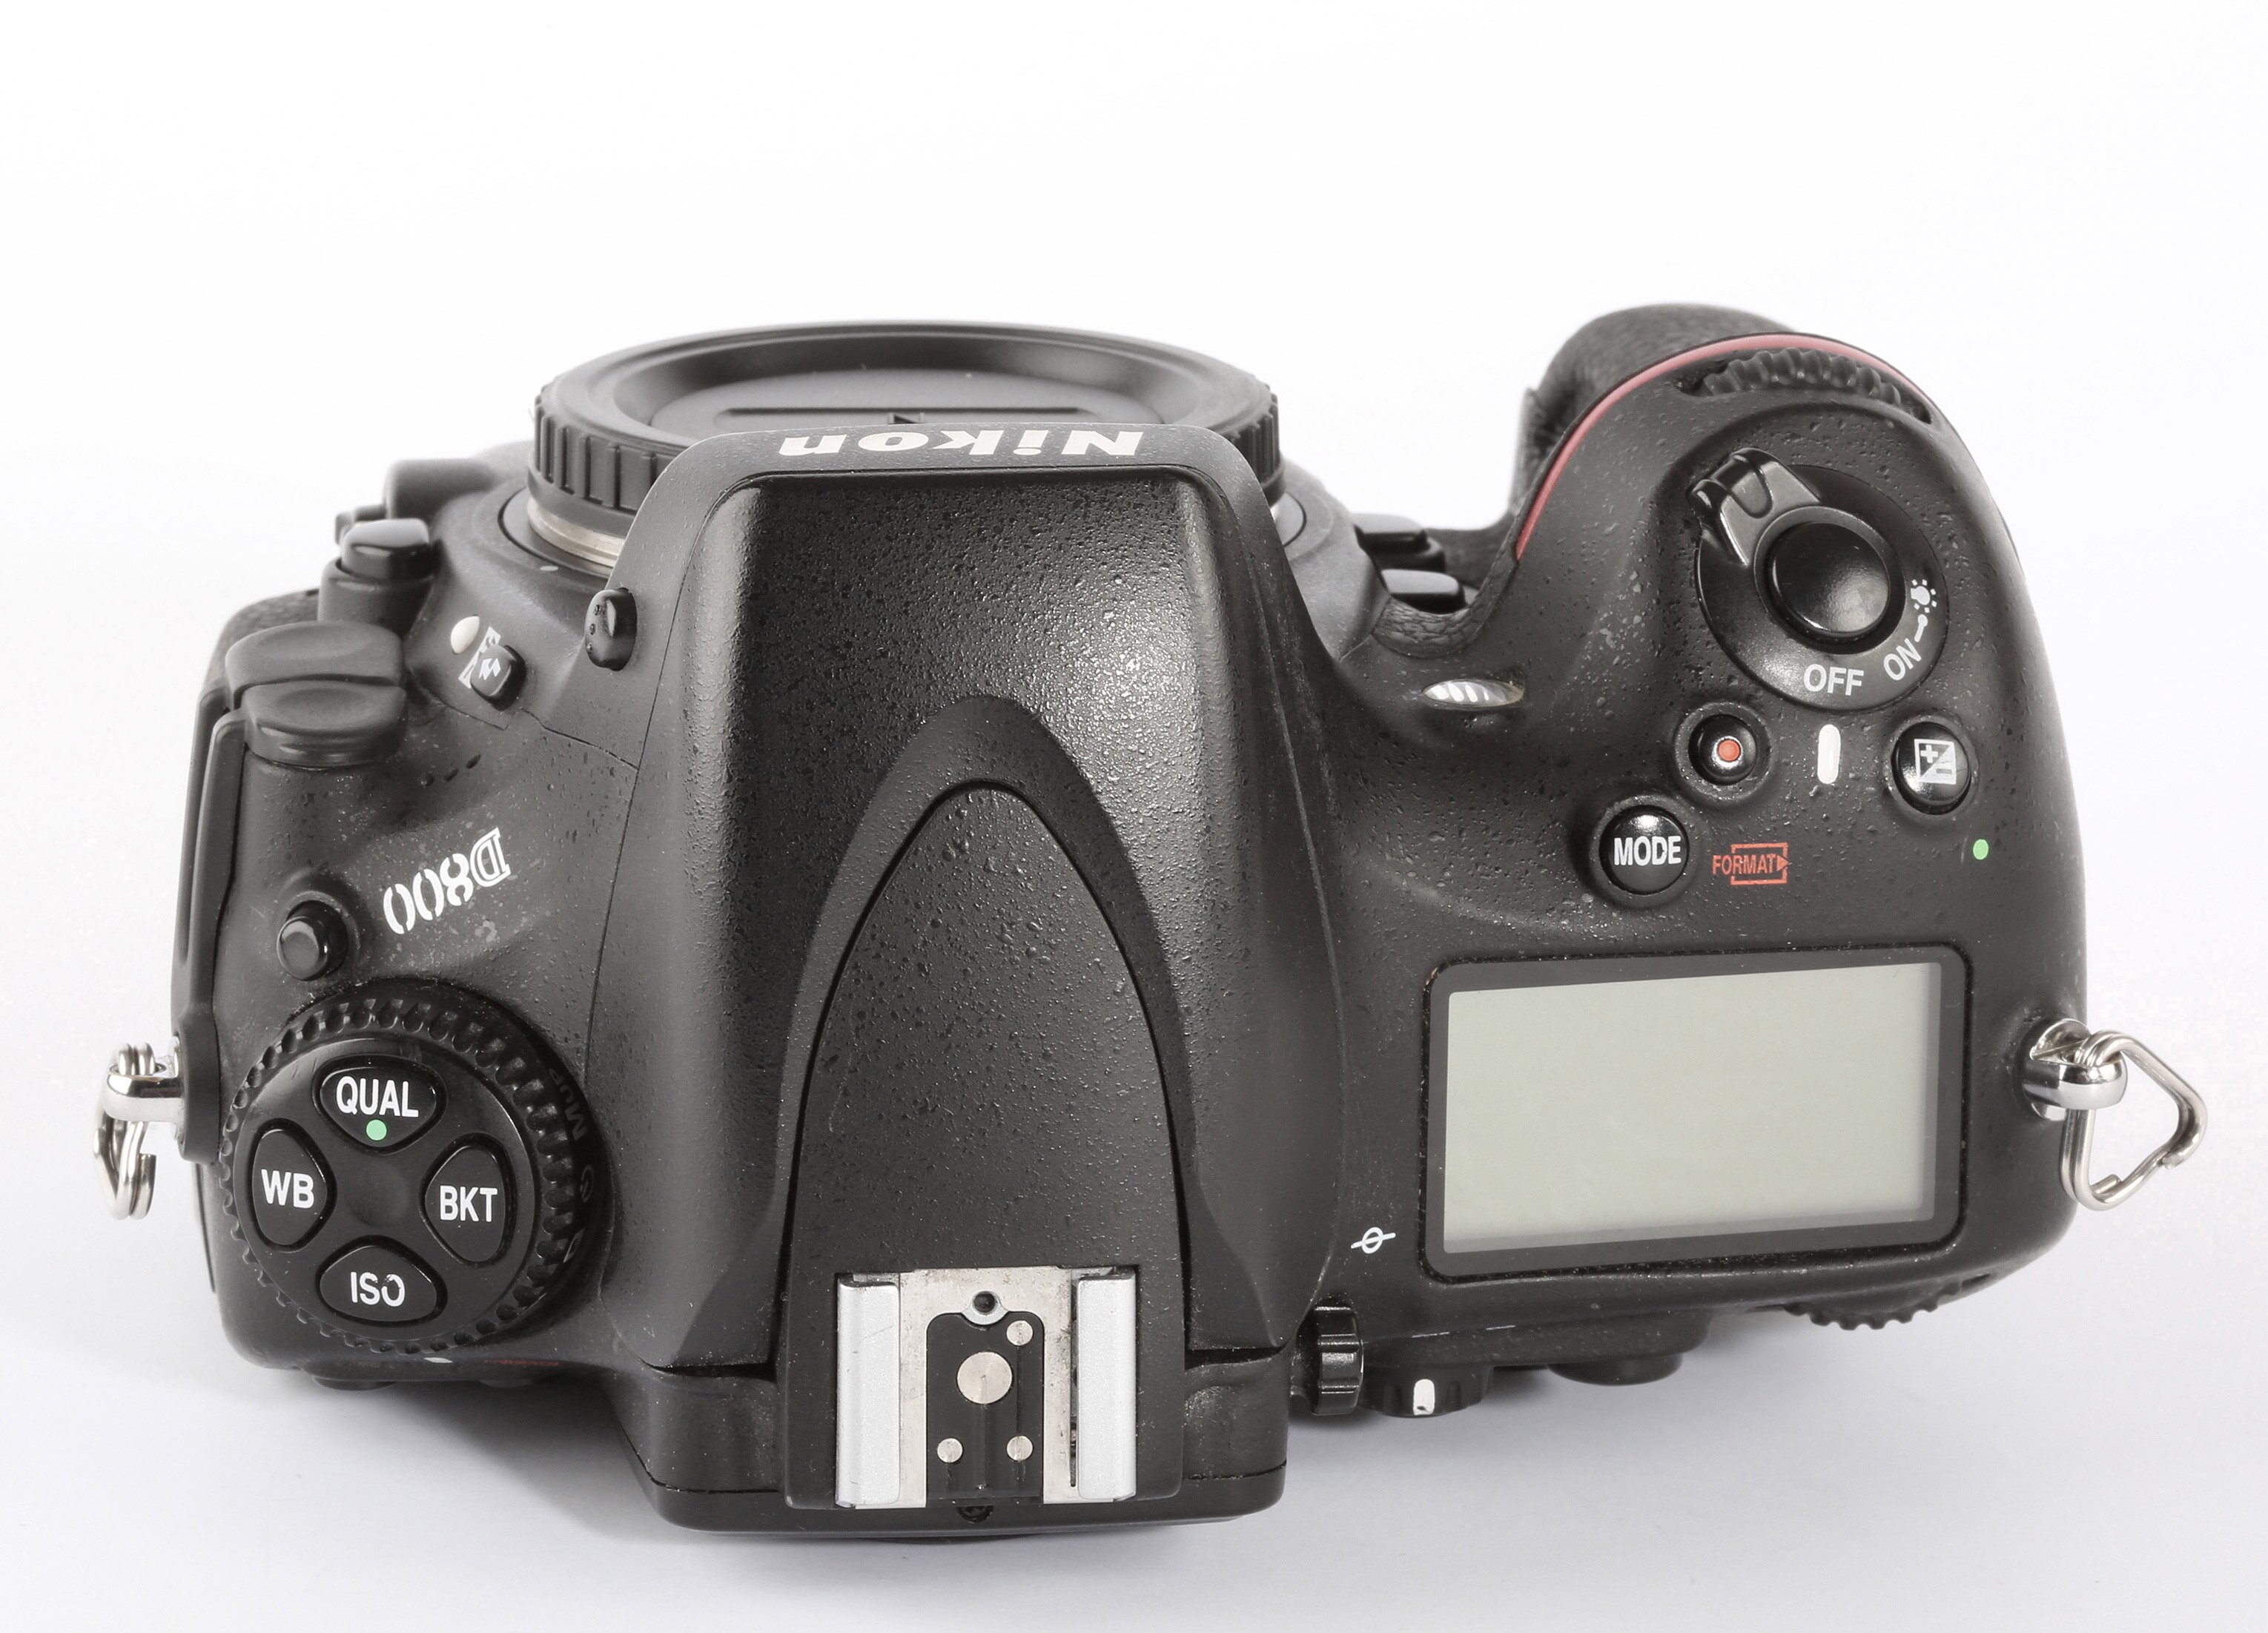 Nikon D800 106000 Auslösungen